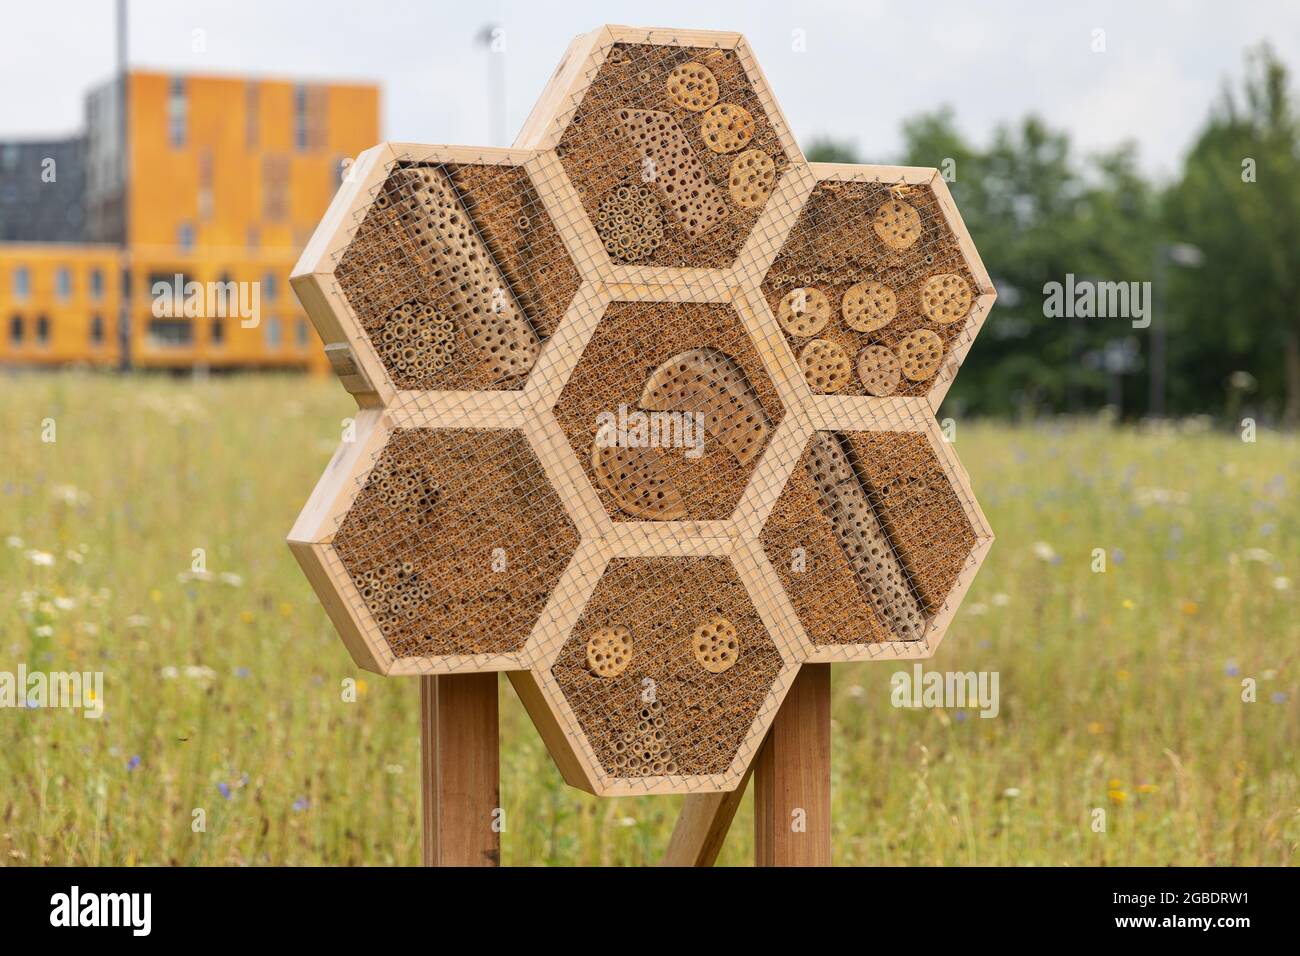 Insektenhotel mit sechseckigen Formen aus natürlichen Materialien wie Holz mit Löchern, Bambusstäbchen und Trinkhalmen für eine bessere Artenvielfalt in Breda Stadt auf einem Stockfoto